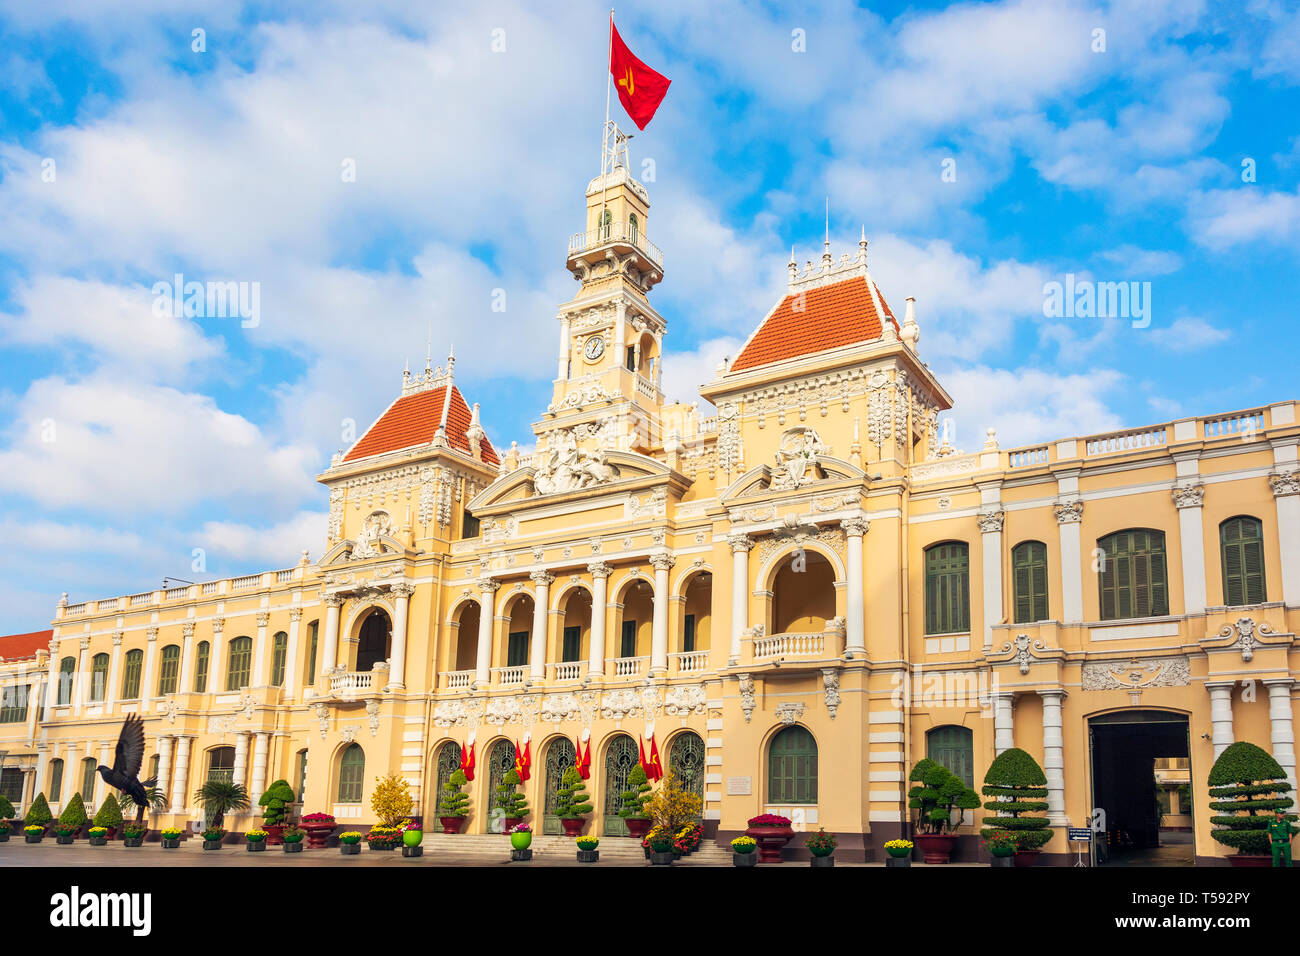 Hotel de Ville, (1901 - 1908) un français néo-baroque architecture bâtiment à l'extrémité nord du Boulevard Nguyen Hue Ho Chi Minh City, Vietnam Banque D'Images